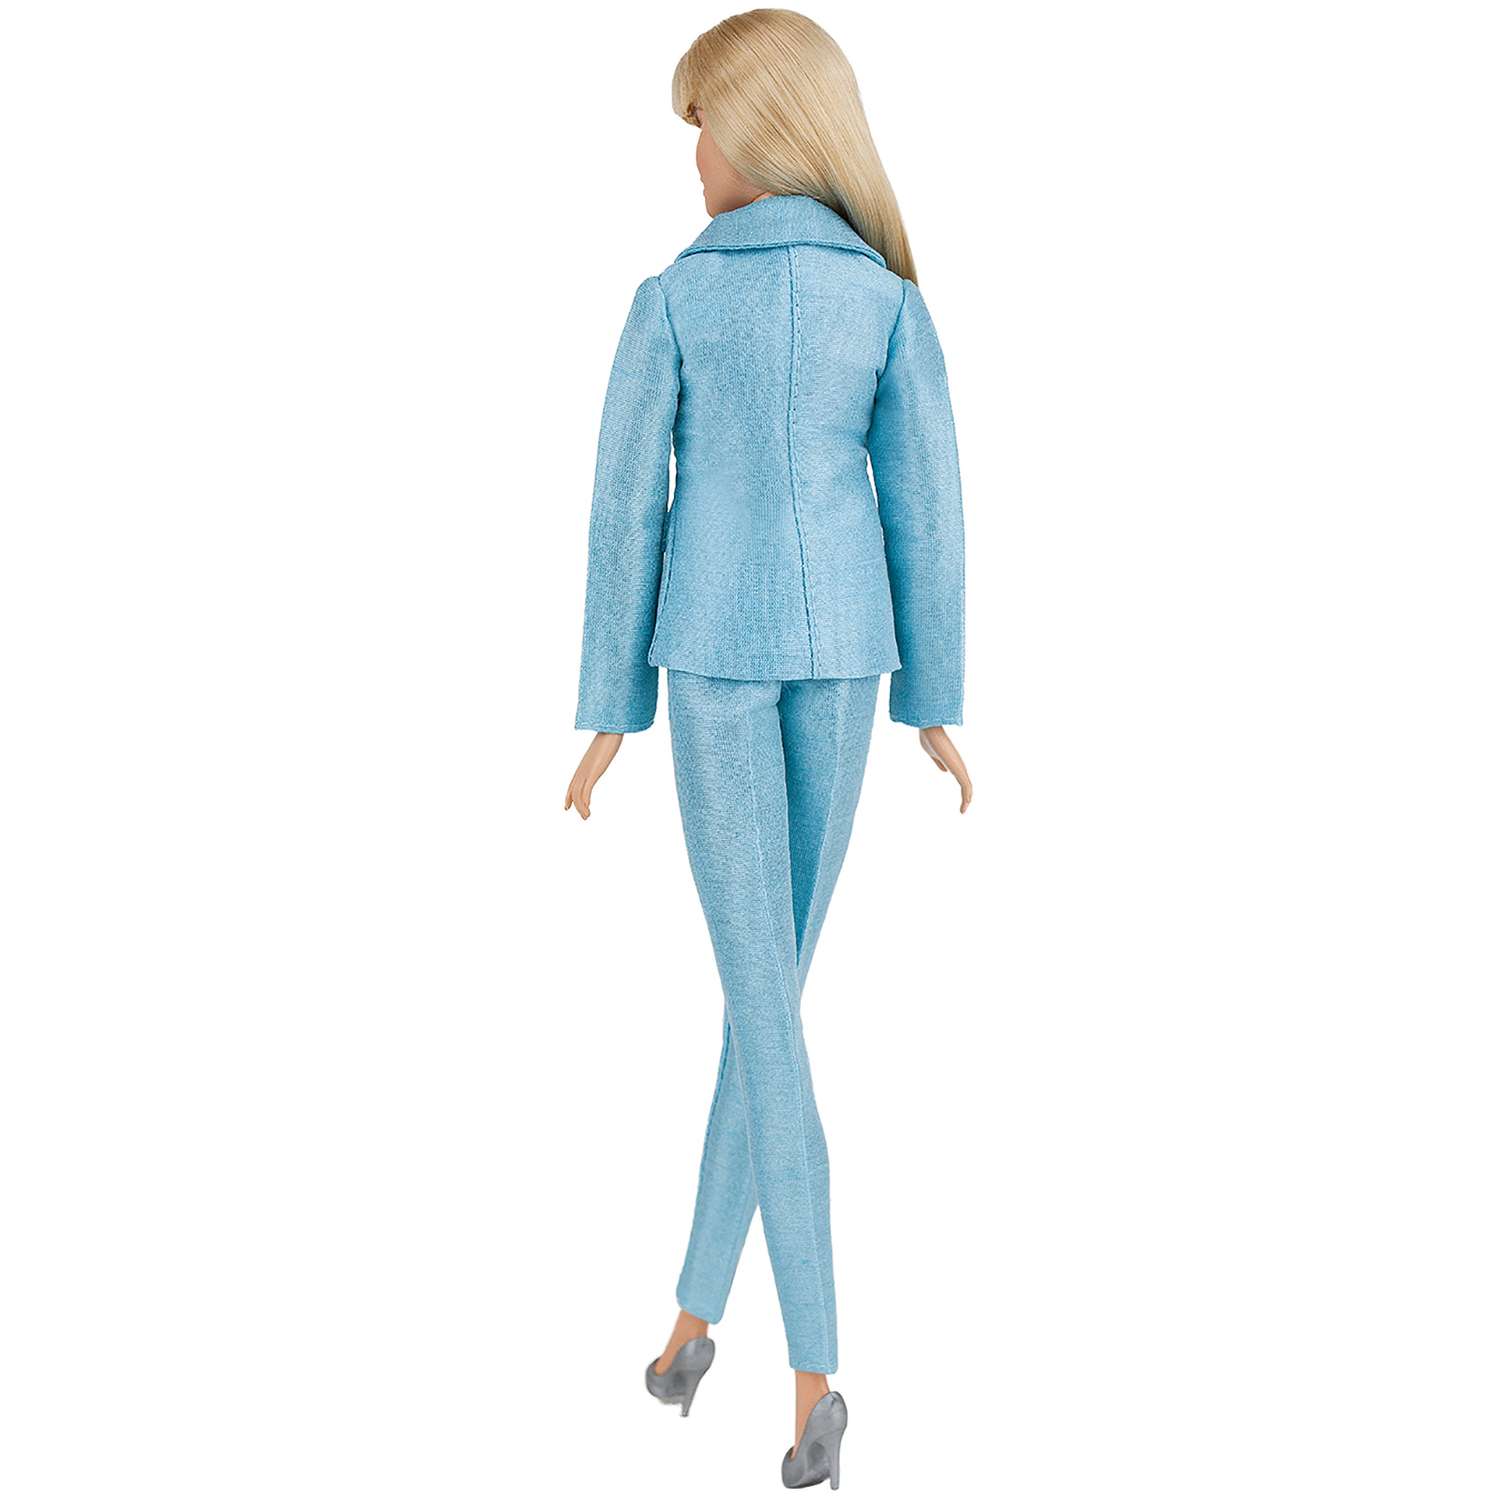 Шелковый брючный костюм Эленприв Небесно-голубой для куклы 29 см типа Барби FA-011-15 - фото 10